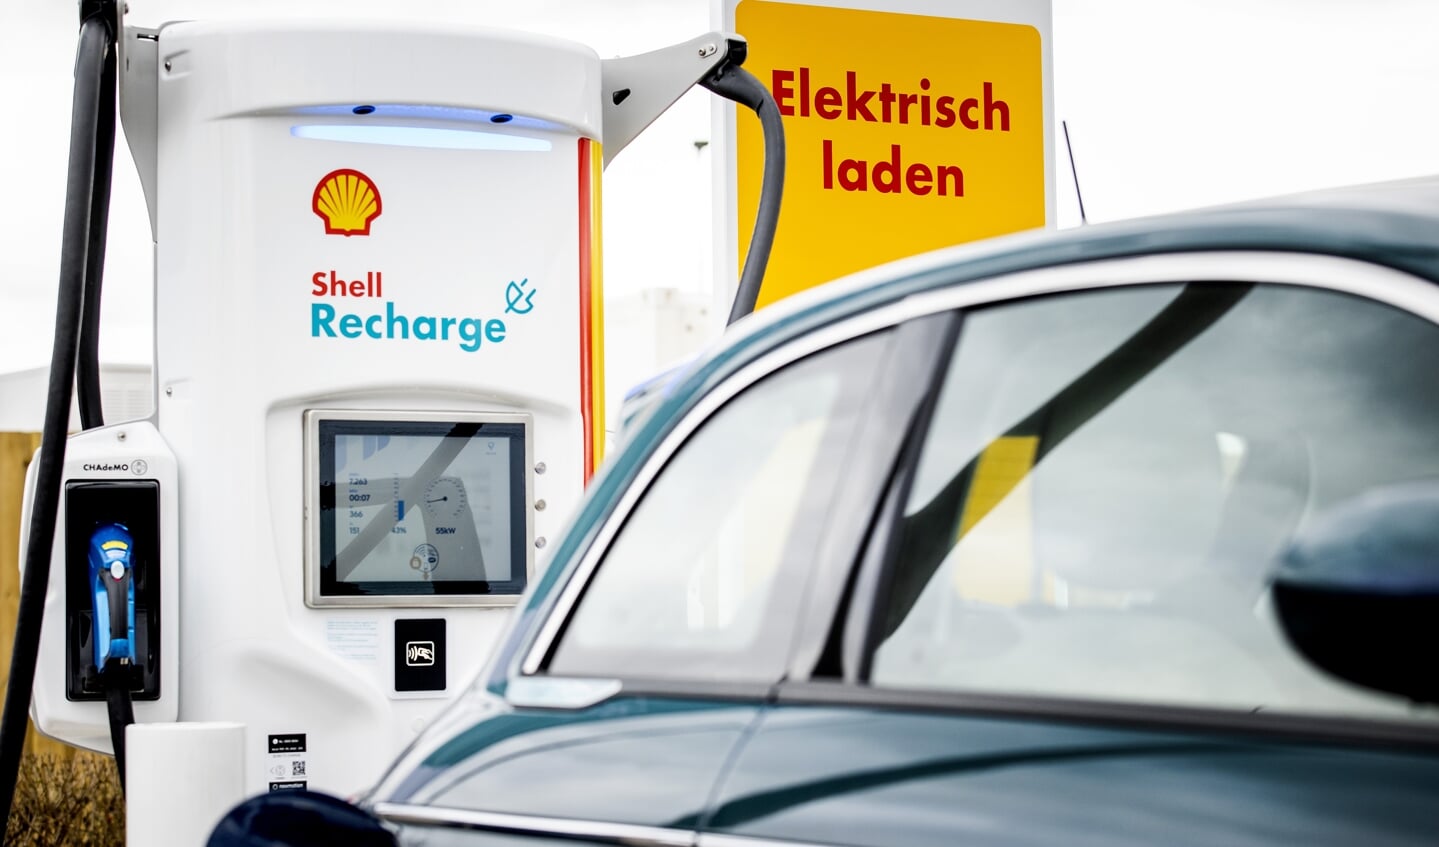 Laadpunt van Shell voor elektrische auto's.